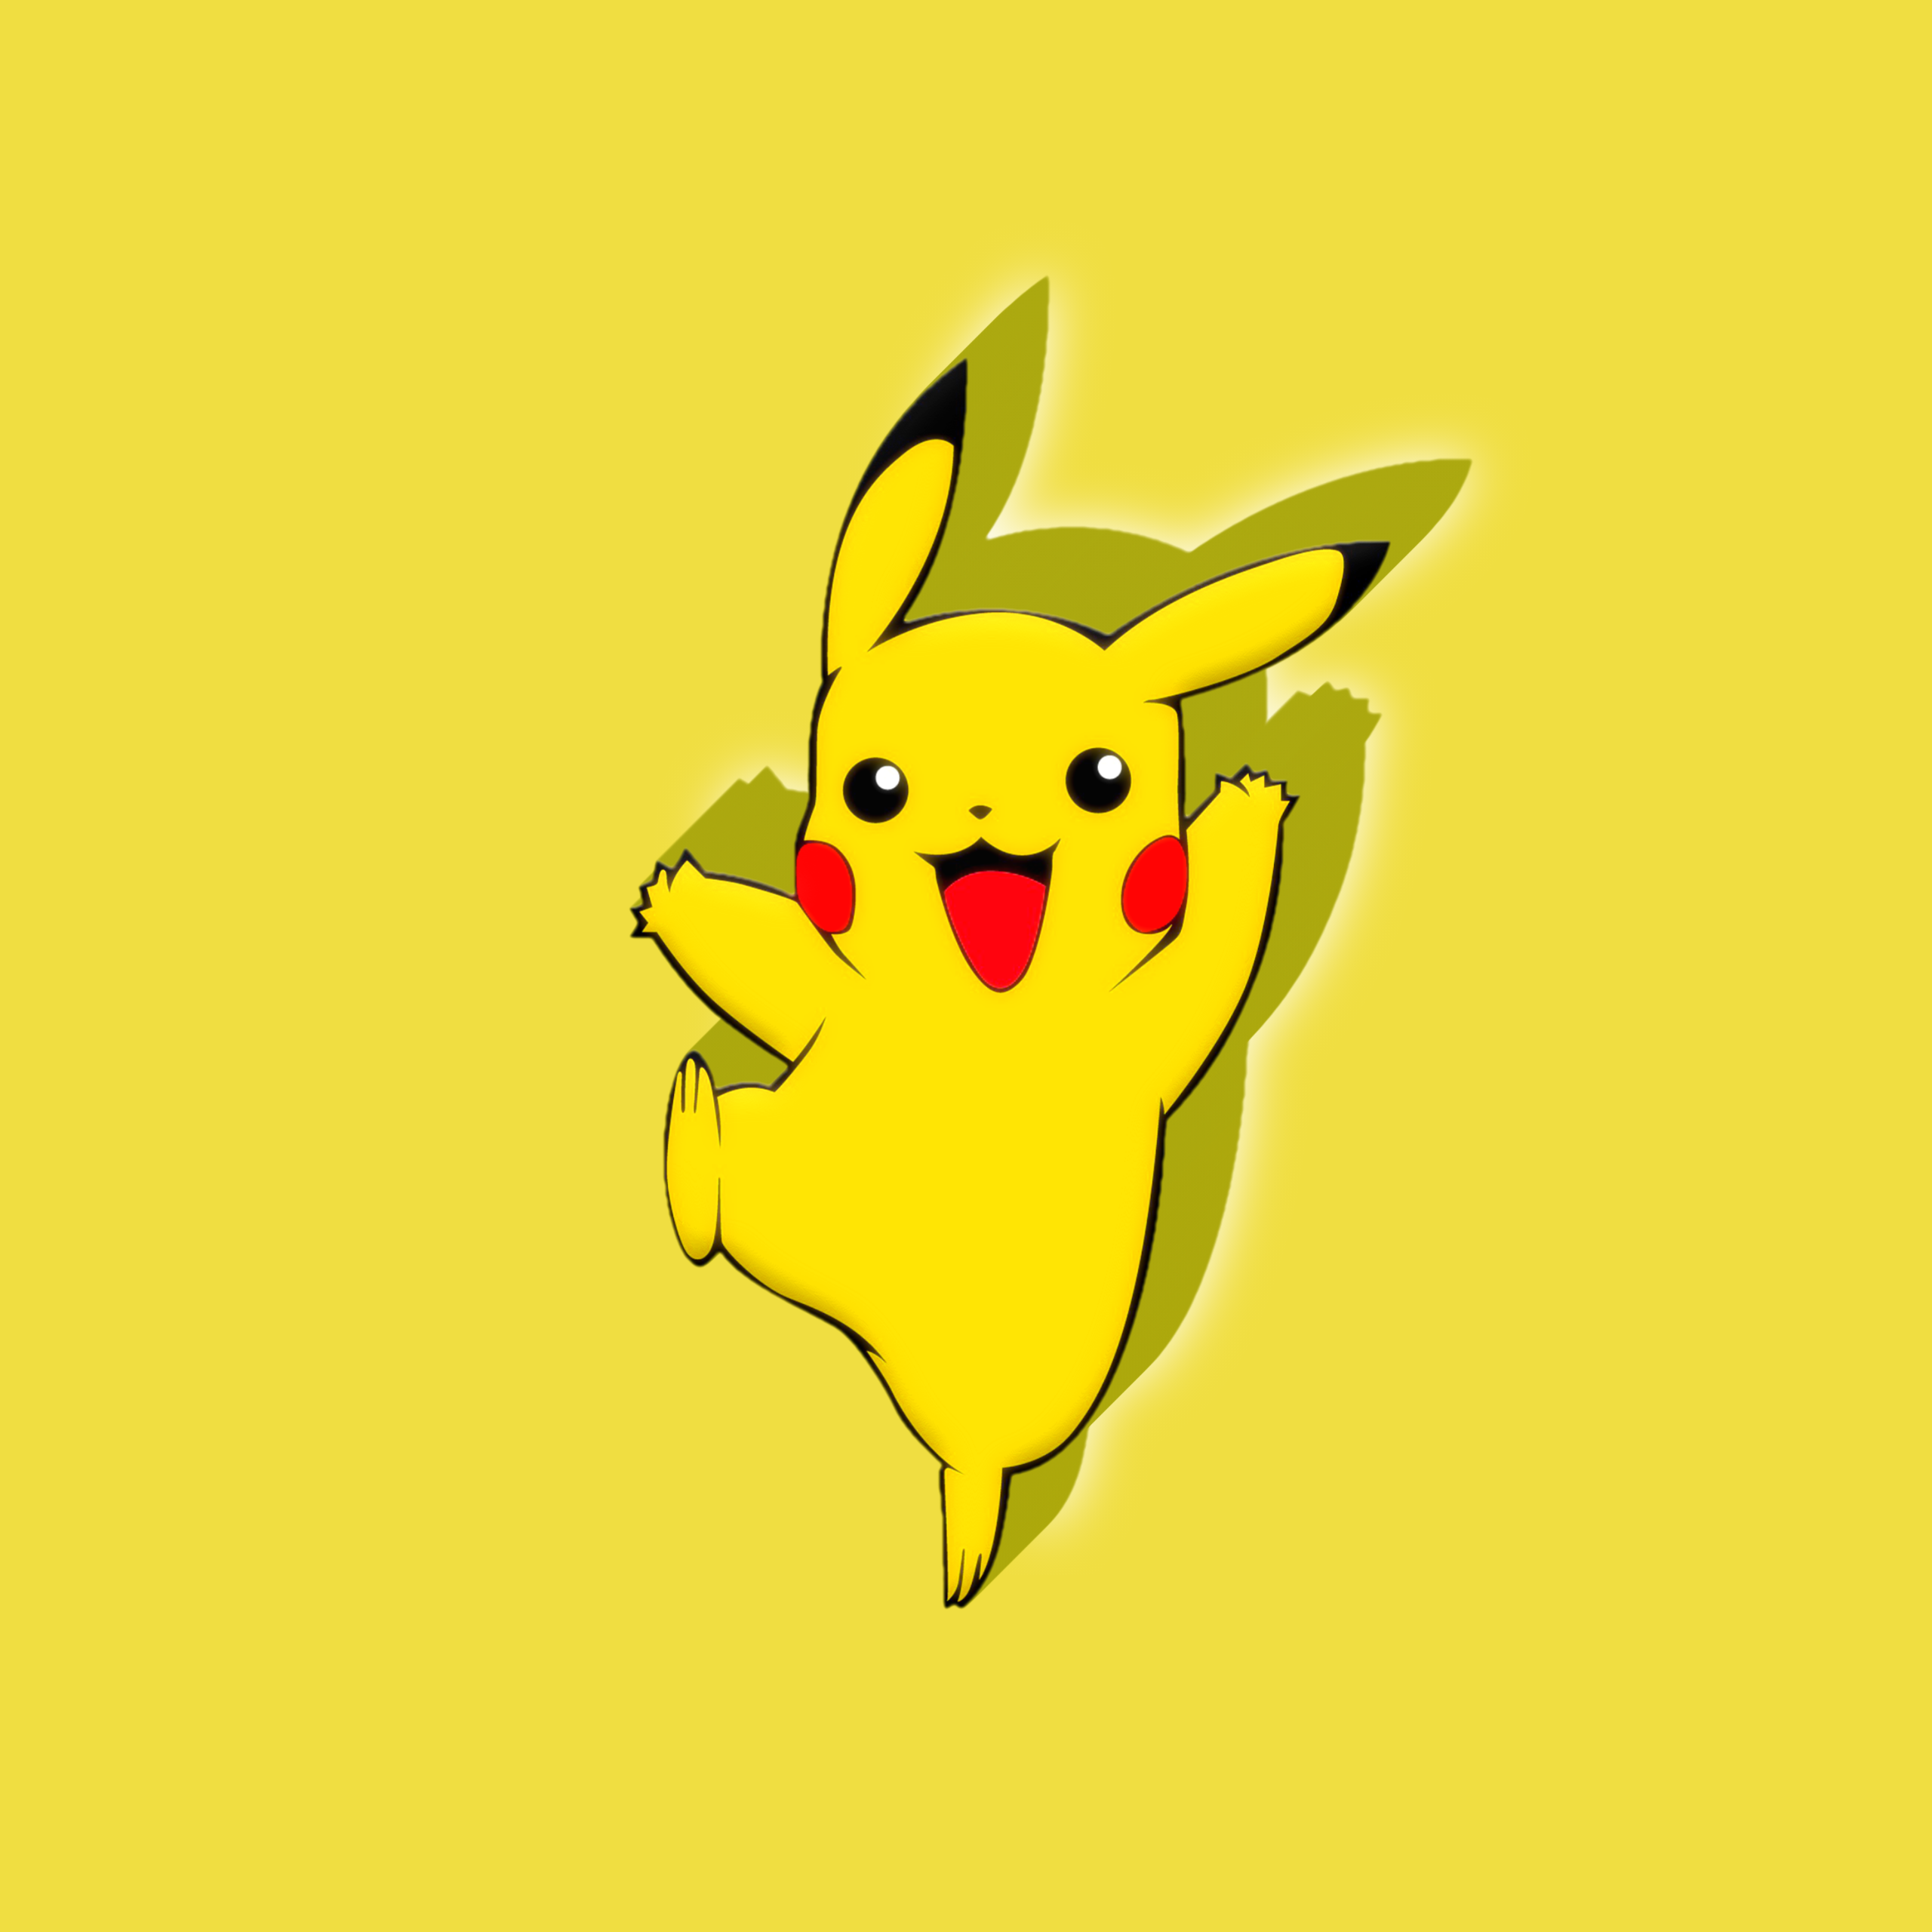 Dù bạn là một fan hâm mộ Pokemon mới hay có kinh nghiệm, hình ảnh Pikachu đáng yêu trên nền màu vàng sẽ chắc chắn khiến bạn say mê. Hãy đón xem hình ảnh tuyệt đẹp này và cảm nhận sức hút mạnh mẽ của nhân vật này.